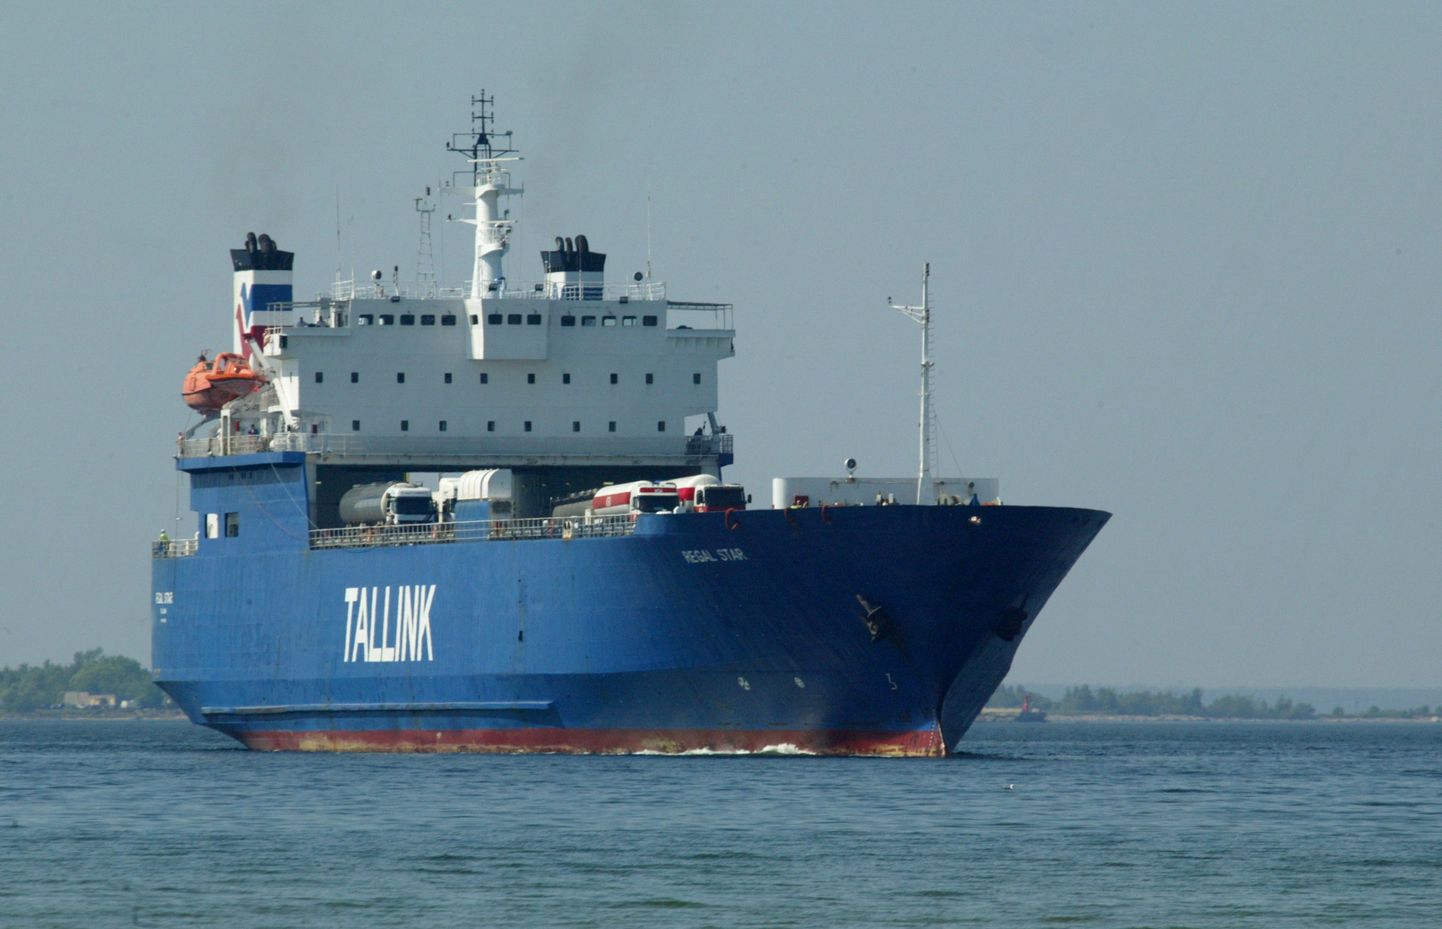 Igaunijas kuģniecības kompānijas “Tallink” kravas kuģis “MS Regal Star” 